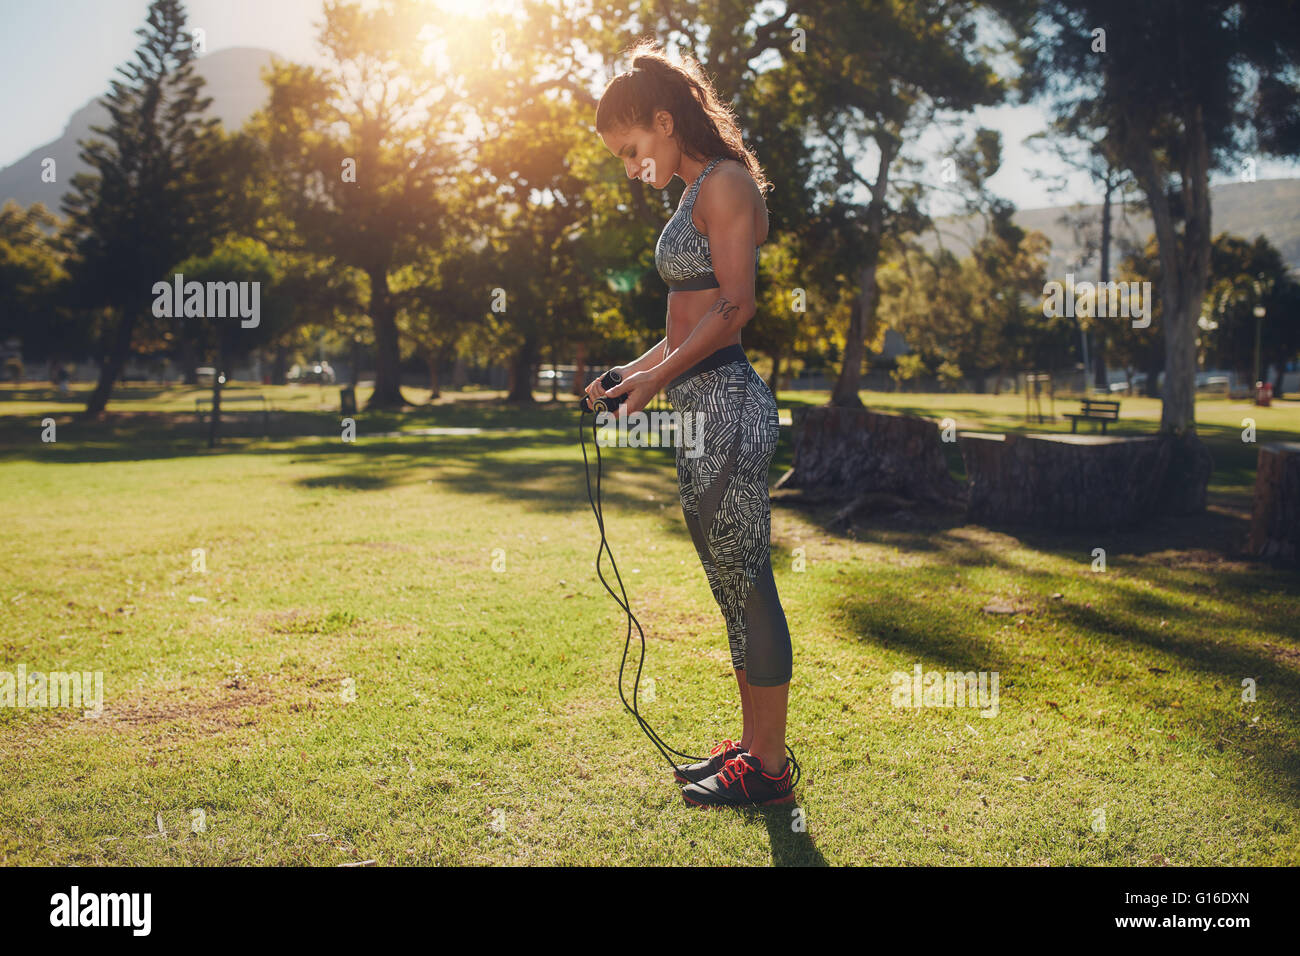 Ein voller Schuss von einer fitten jungen Frau mit Seilspringen im Park. Fitness-Frau, die ein Sprungseil für das Training auf s hält Stockfoto